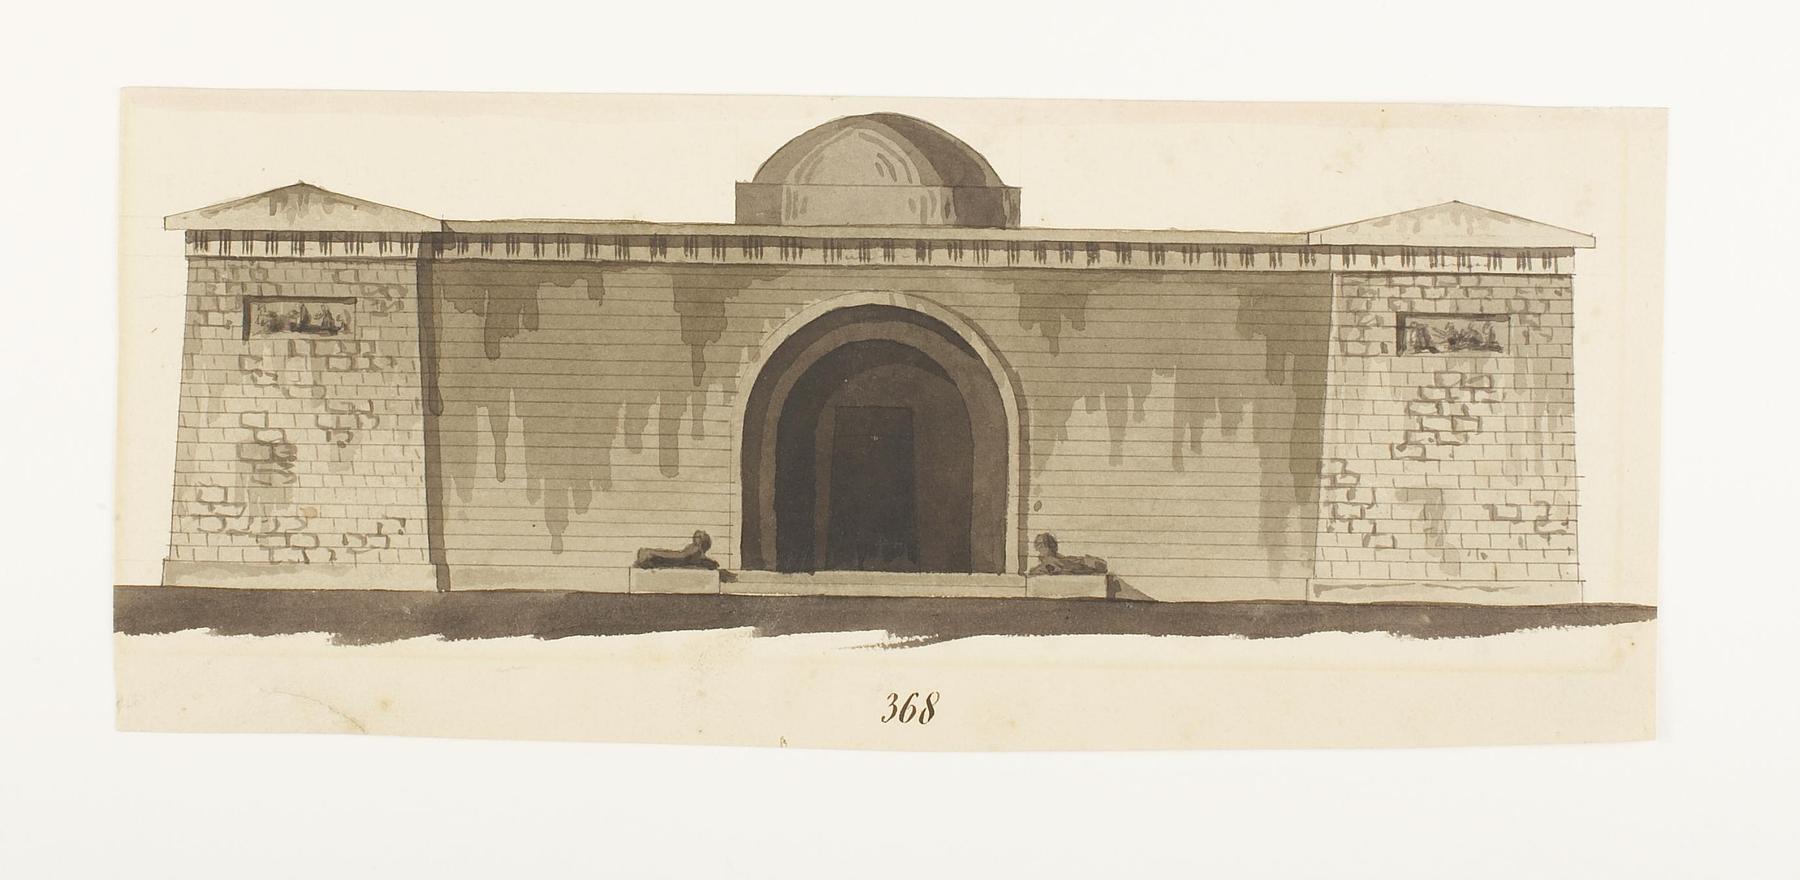 Udkast til et mausoleum eller gravkapel i antik stil, opstalt af facade, D856